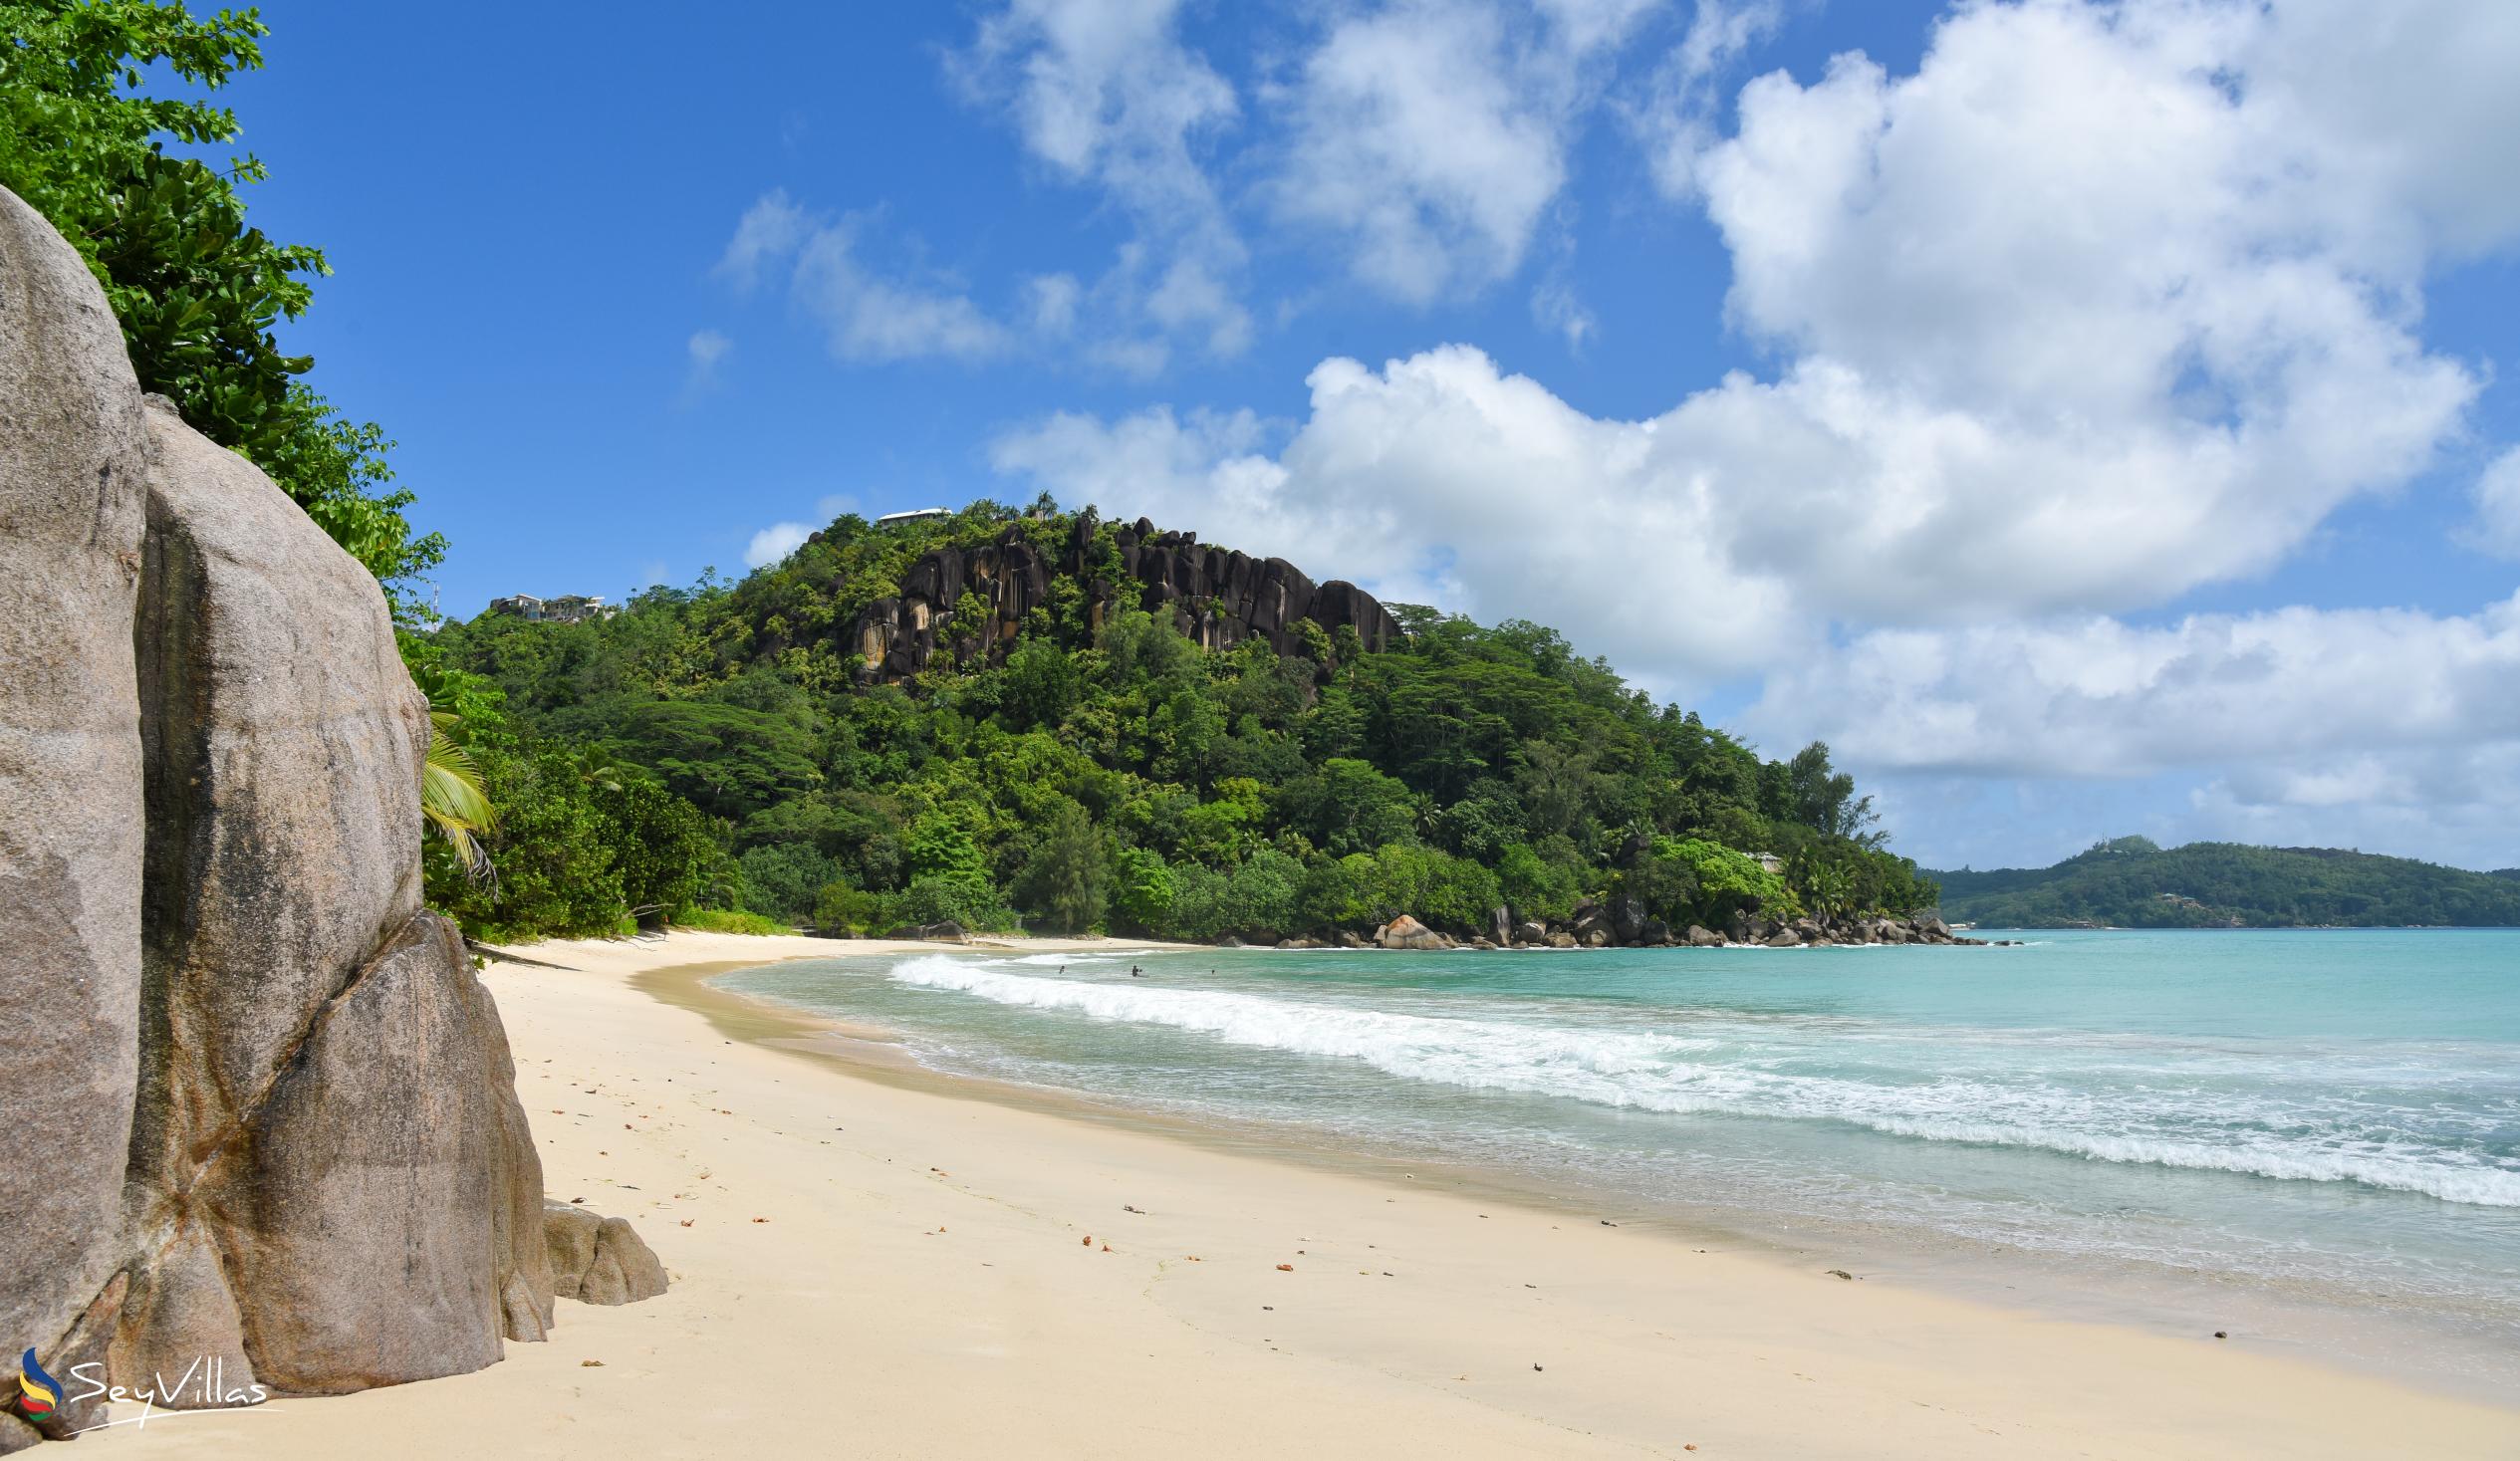 Foto 6: Anse Louis - Mahé (Seychelles)